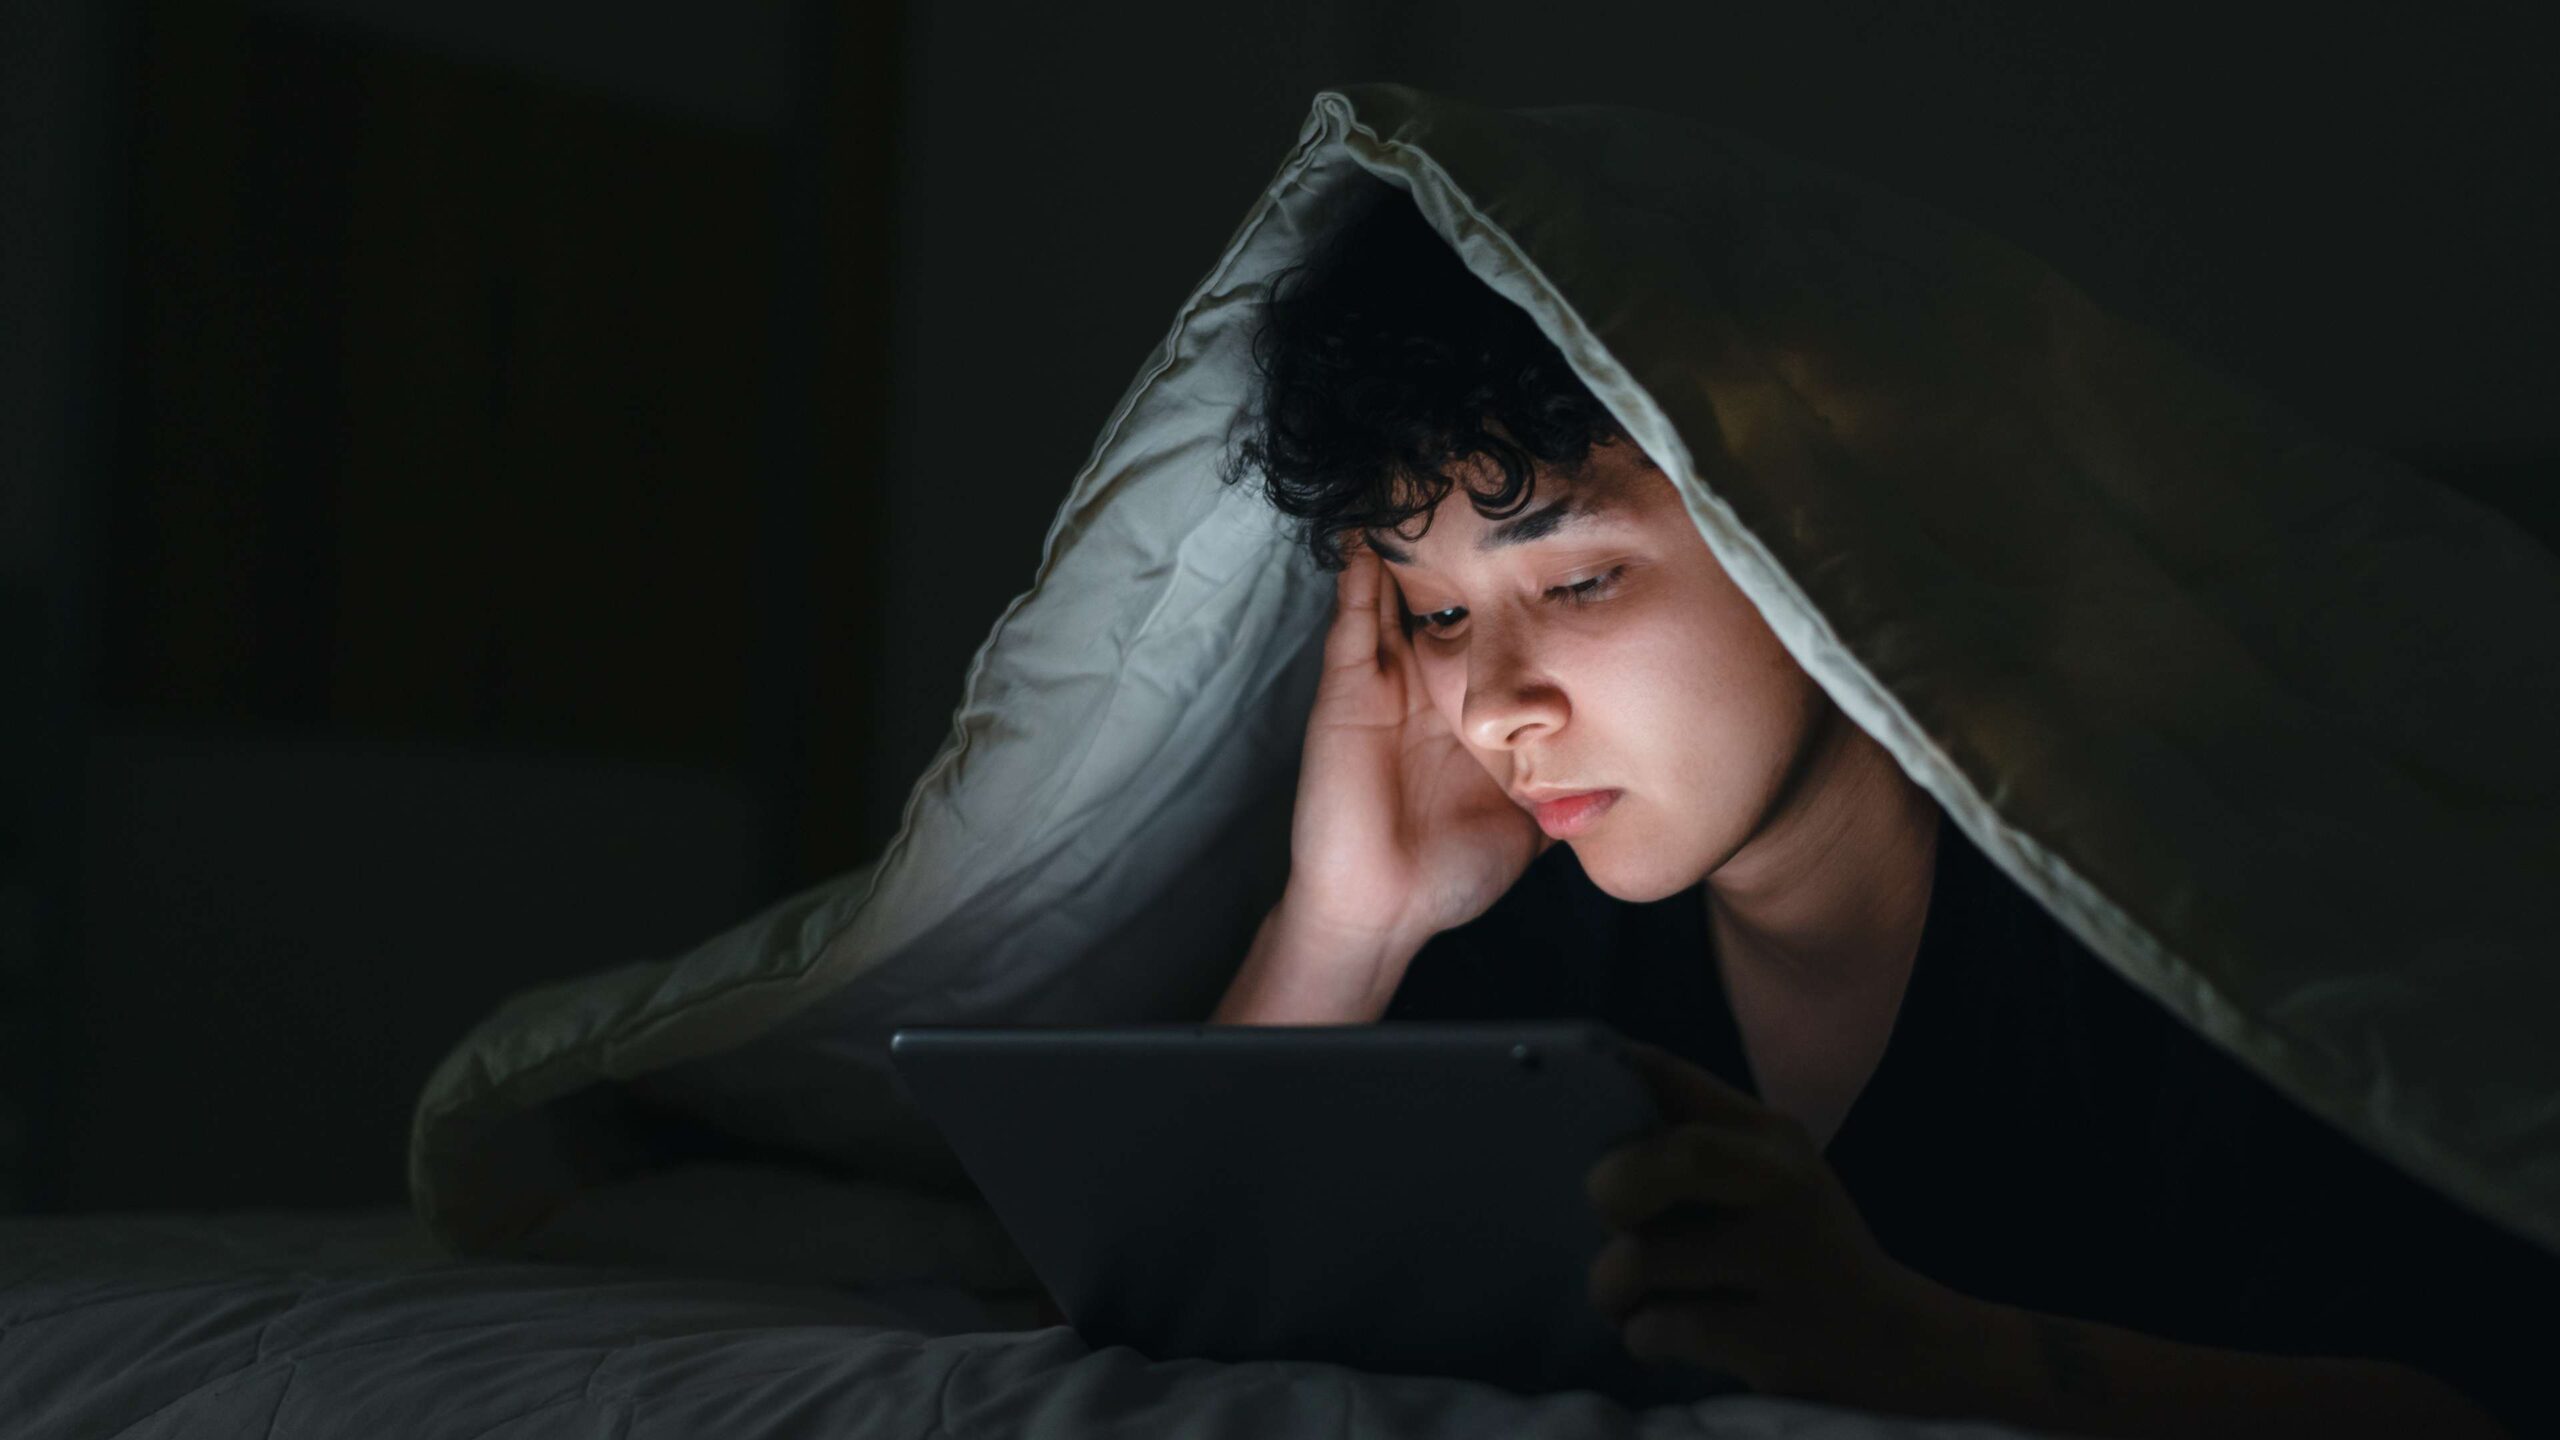 Une image sur une page Web concernant le site Web sur la santé mentale de Jeunesse, J'écoute d’une jeune personne cachée sous une couverture regardant une tablette